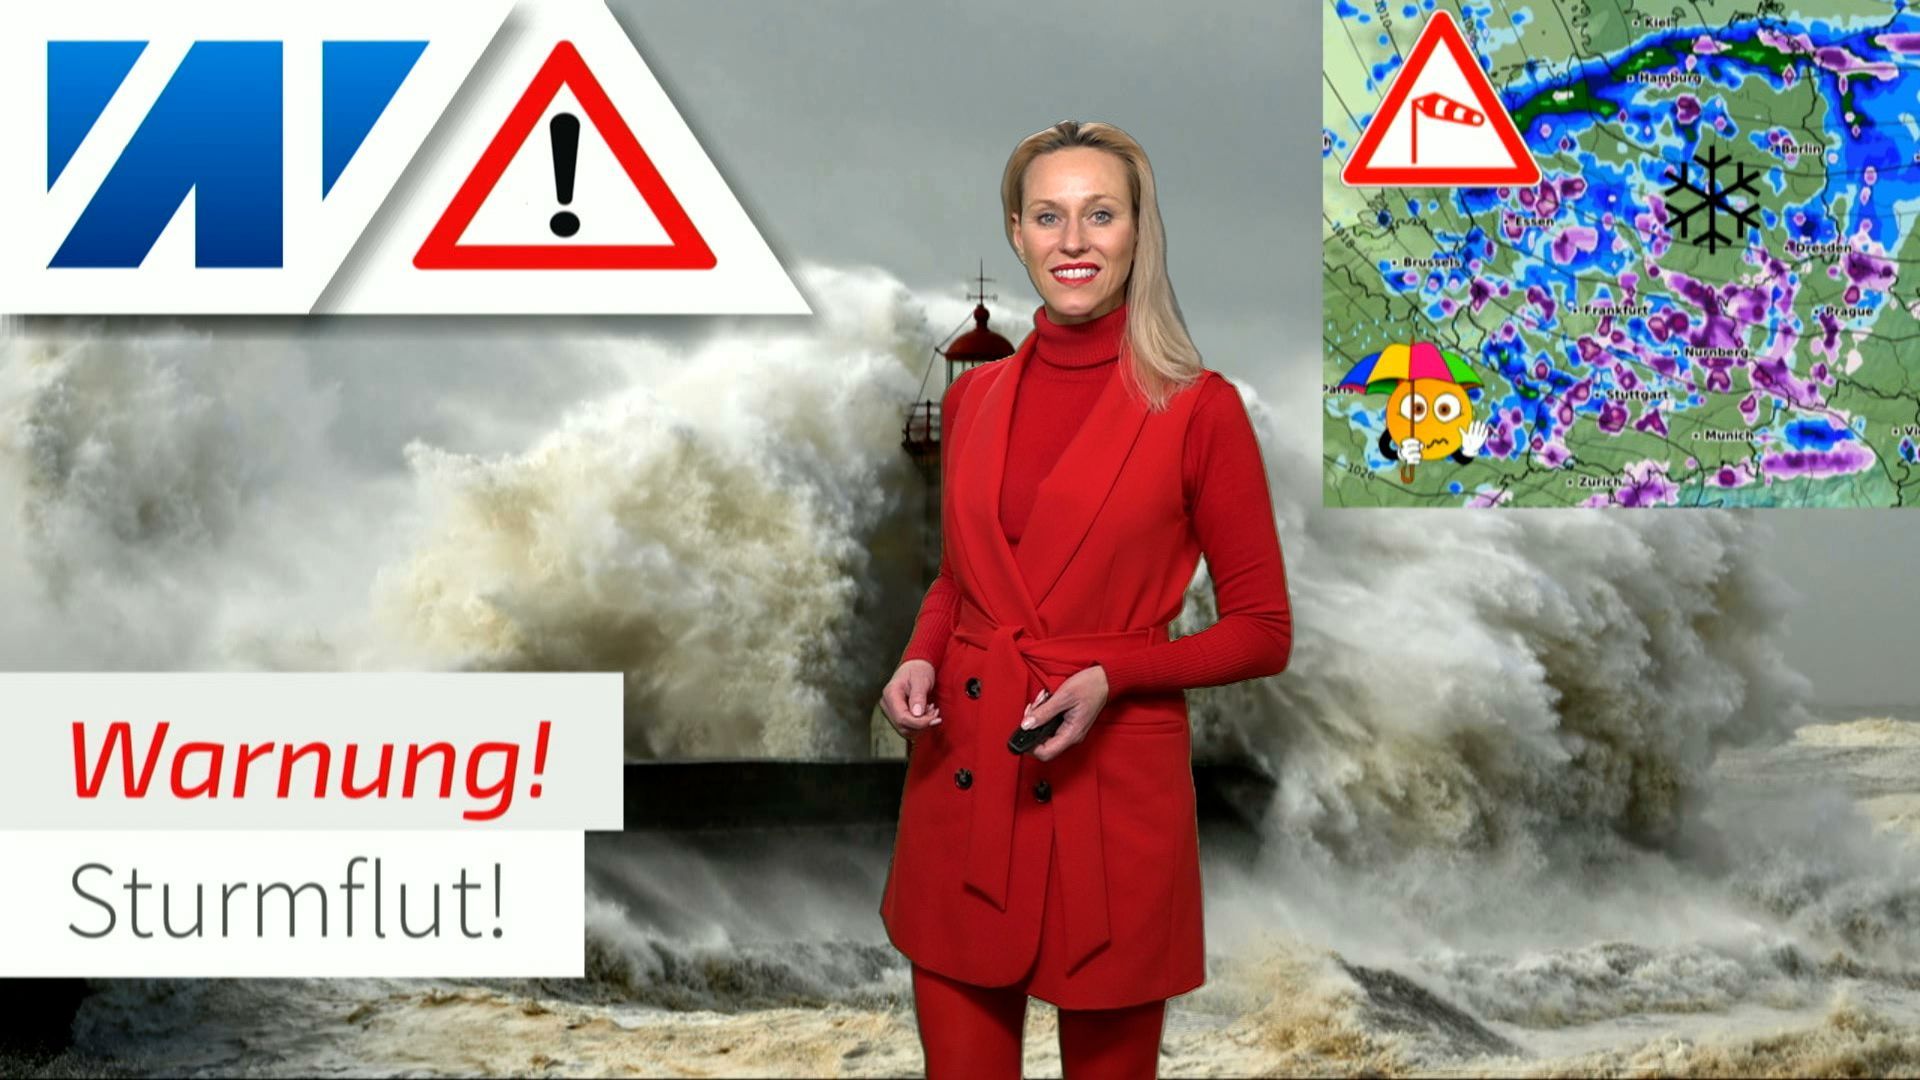 Tormenta sobre Alemania: vientos huracanados y peligro de marejada en las costas. ¡Se está mojando!